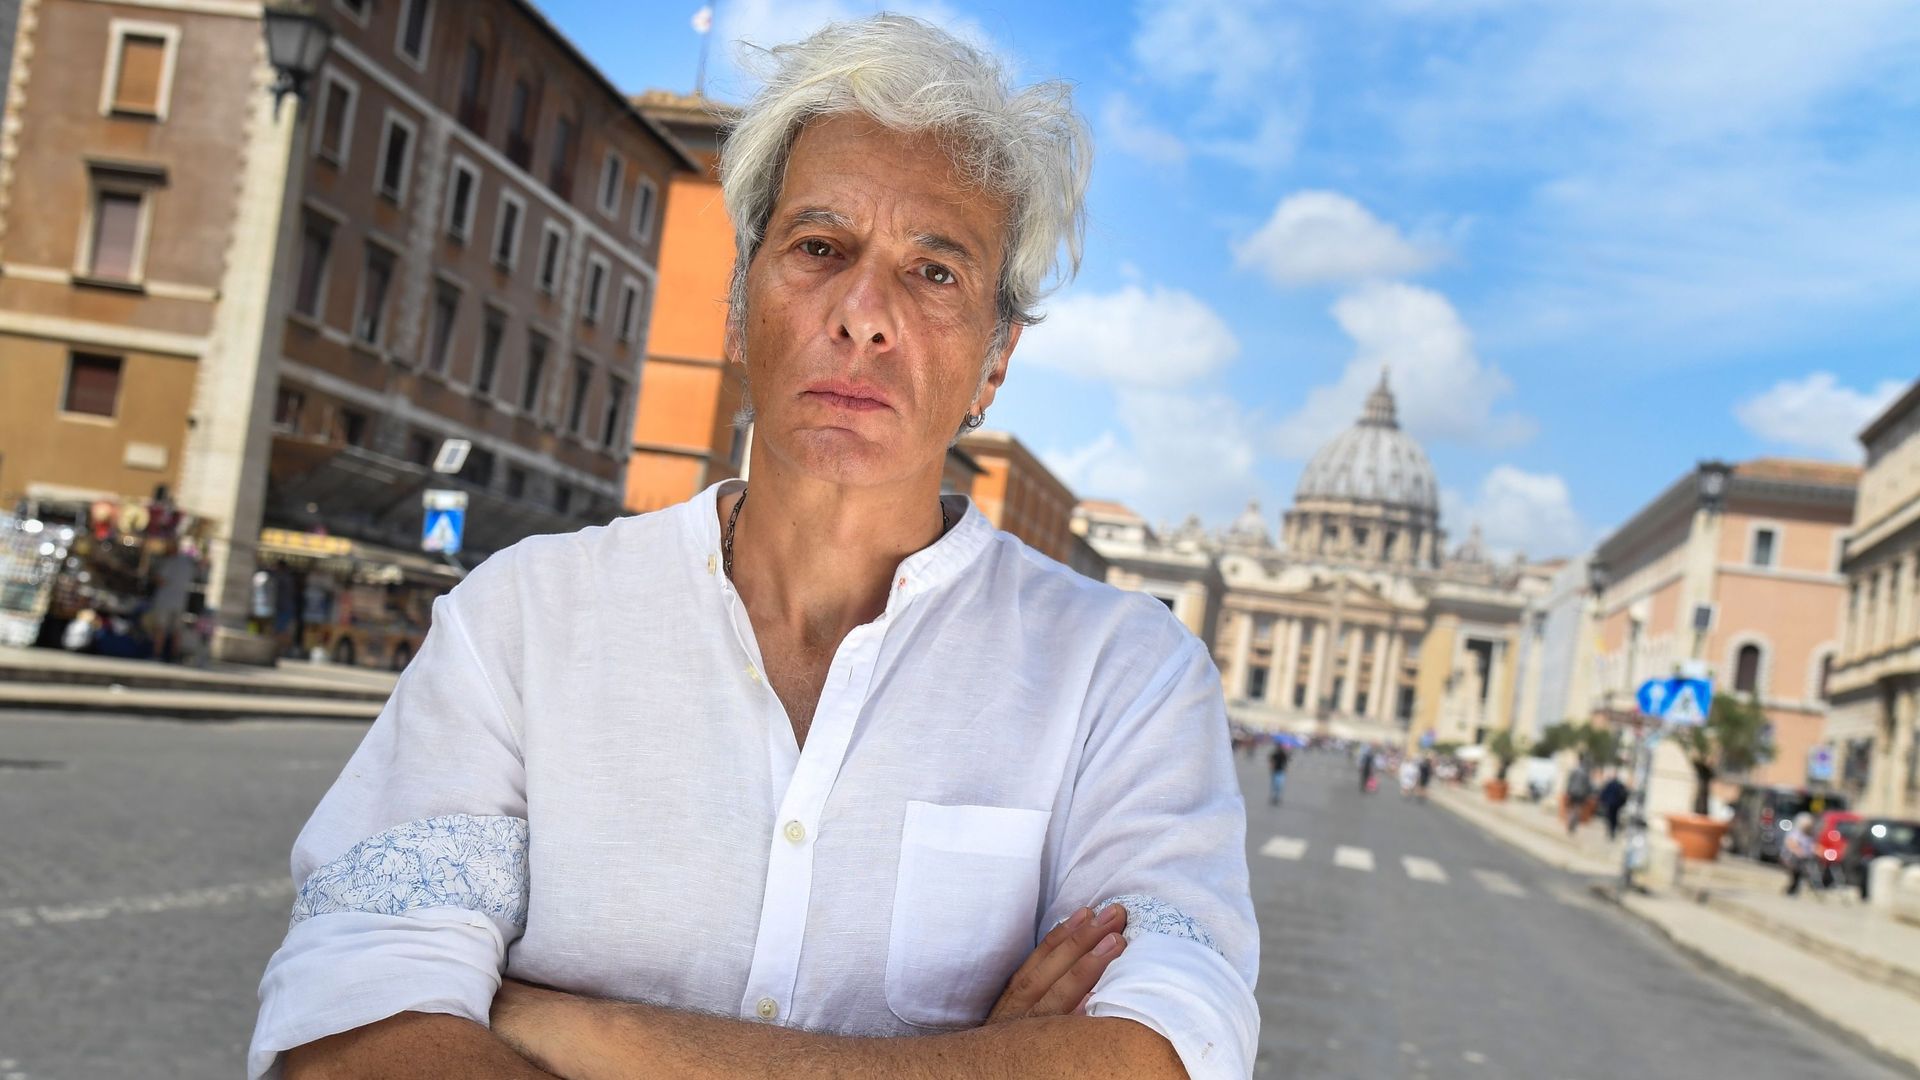 Pietro Orlandi cherche sa sœur depuis qu'elle a disparu il y  a 36 ans